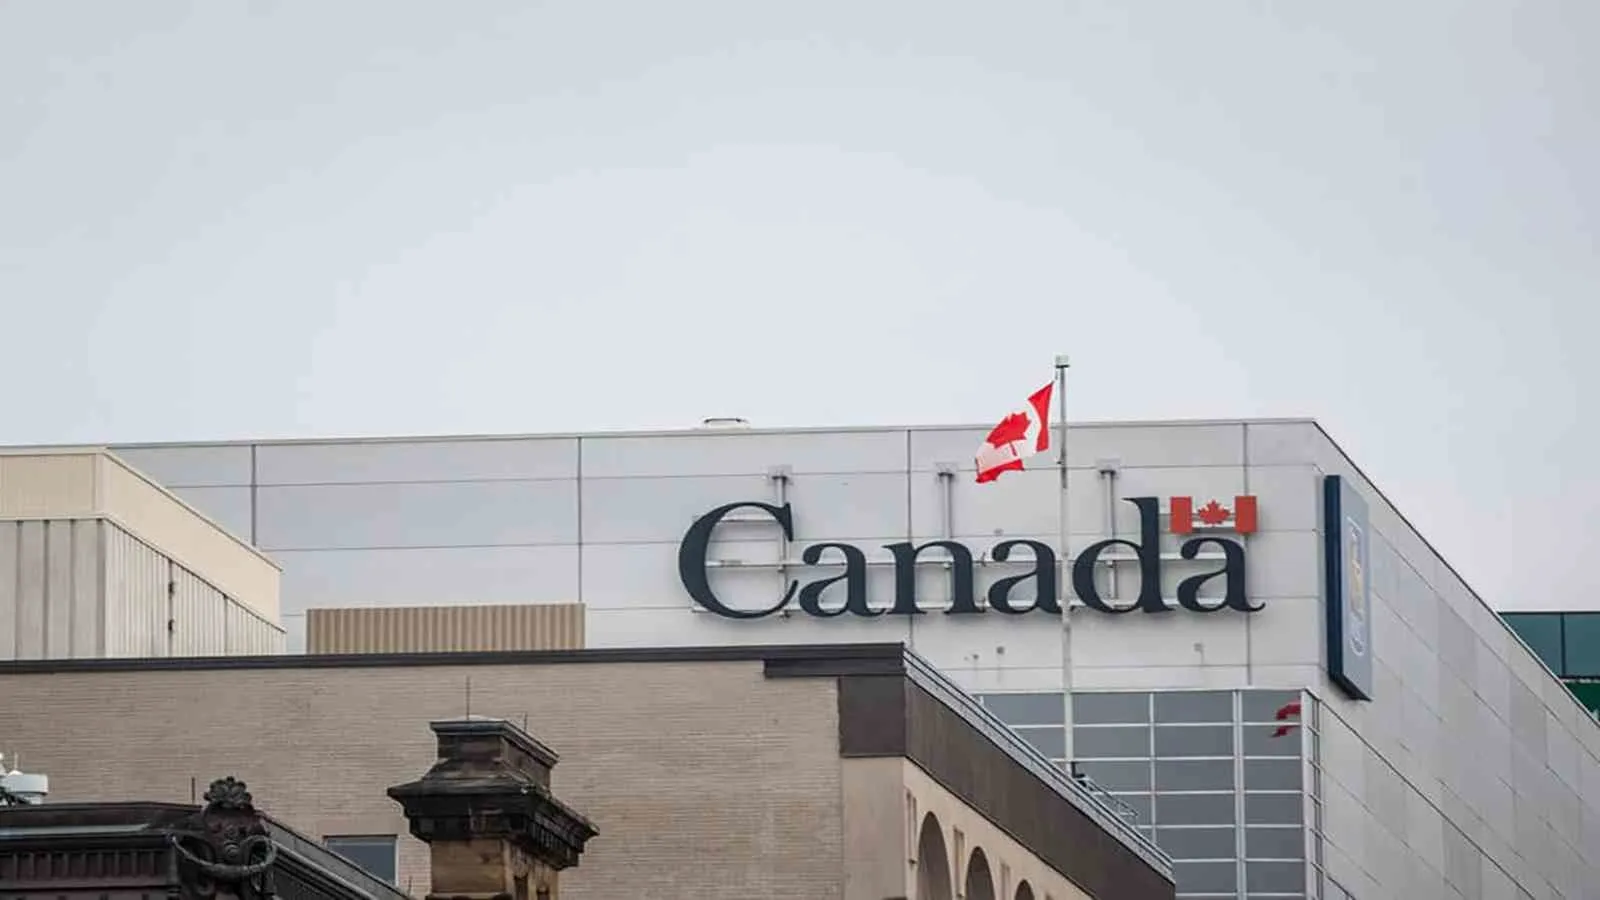 كندا تعلن إجراءات جديدة لتسهيل بقاء المواطنين الأتراك والسوريين بعد الزلزال